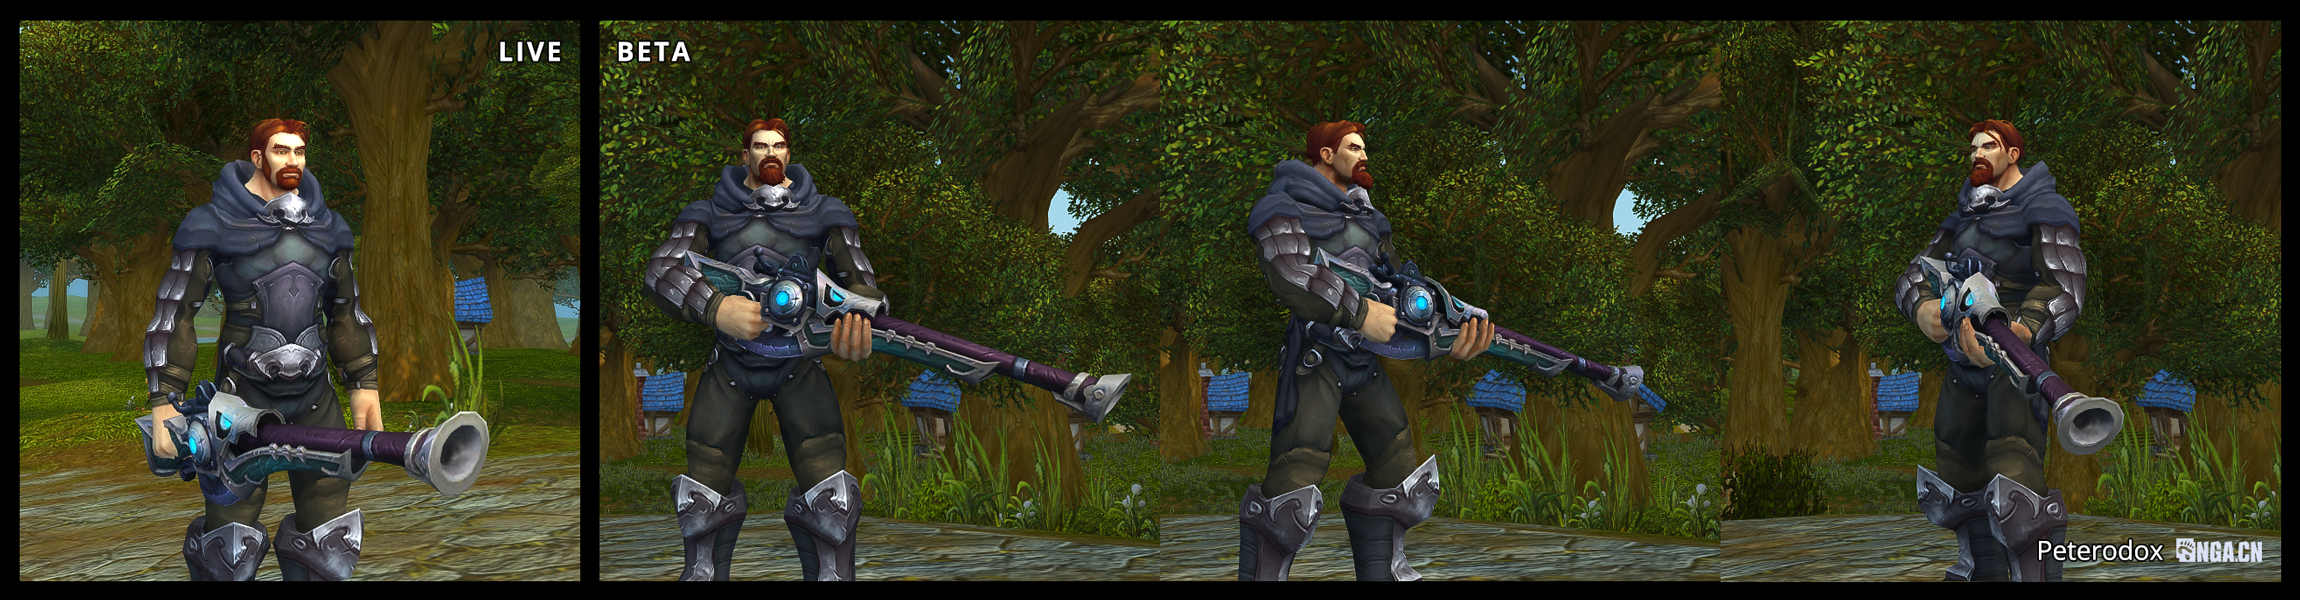 《魔兽世界》8.0资料片测试服猎人职业改动 角色持弓持枪站姿更新